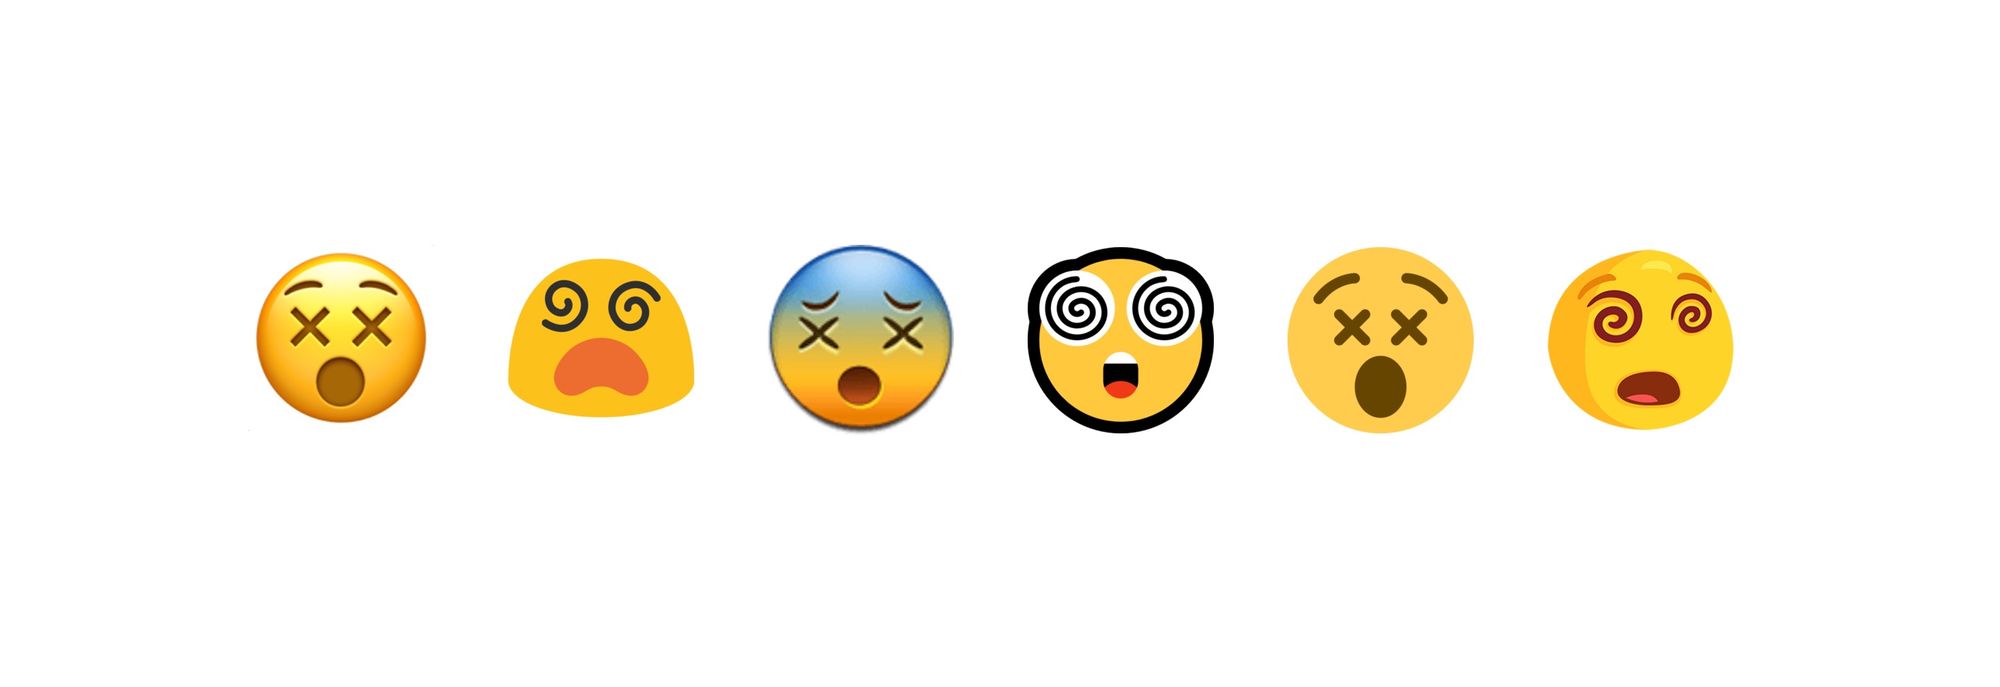 Changes to Unicode Emoji Glyphs